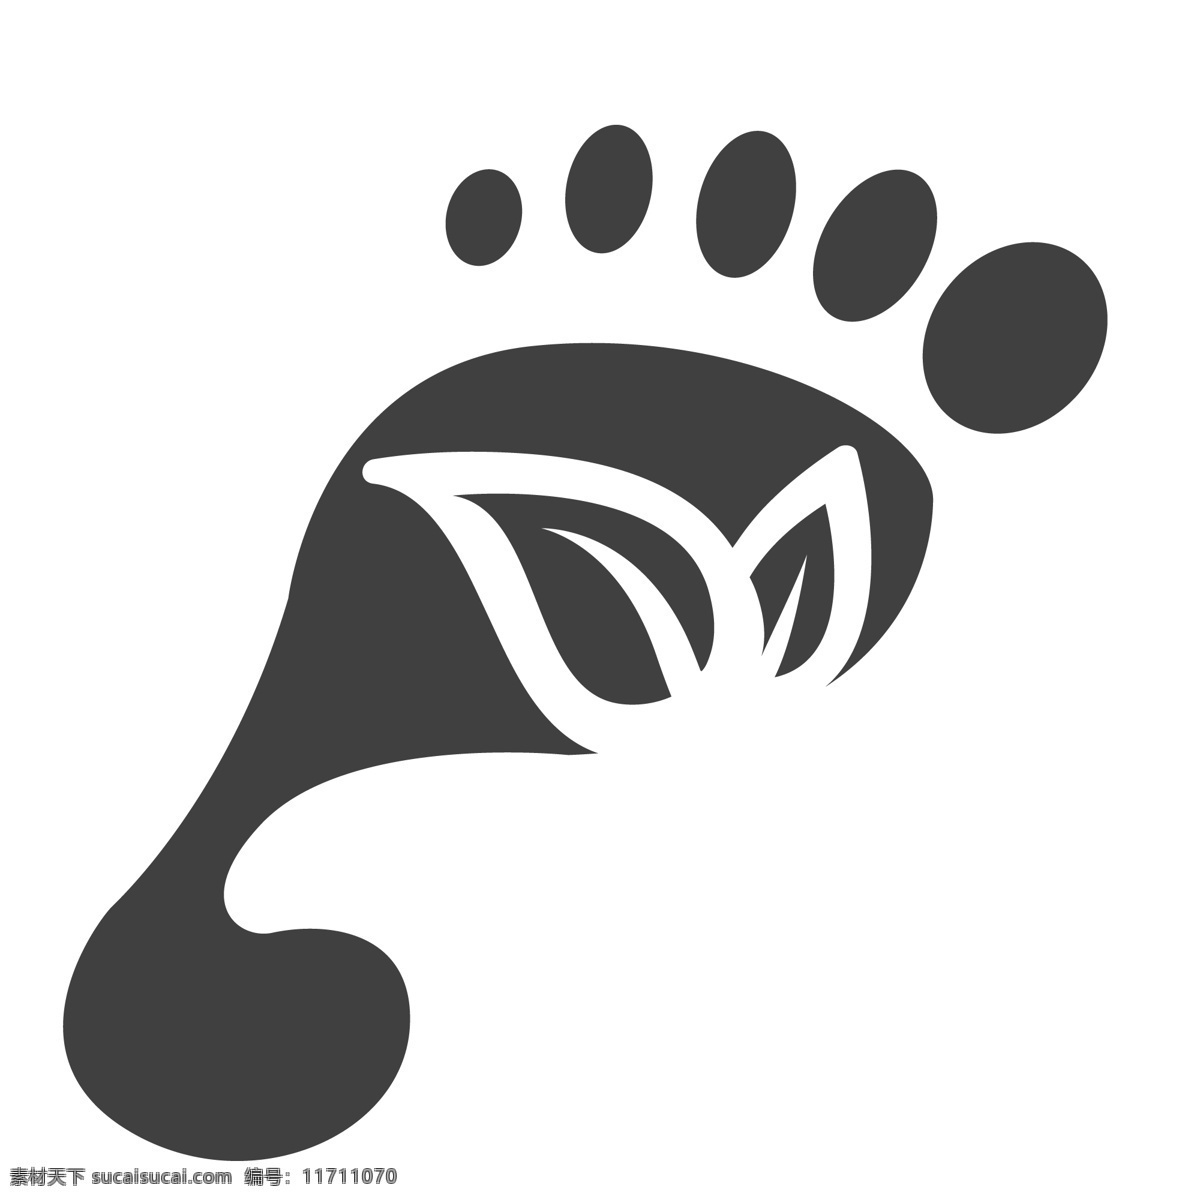 一个 脚丫 图标 叶子 枝叶 生活图标 卡通图标 黑色的图标 手机图标 智能图标设计